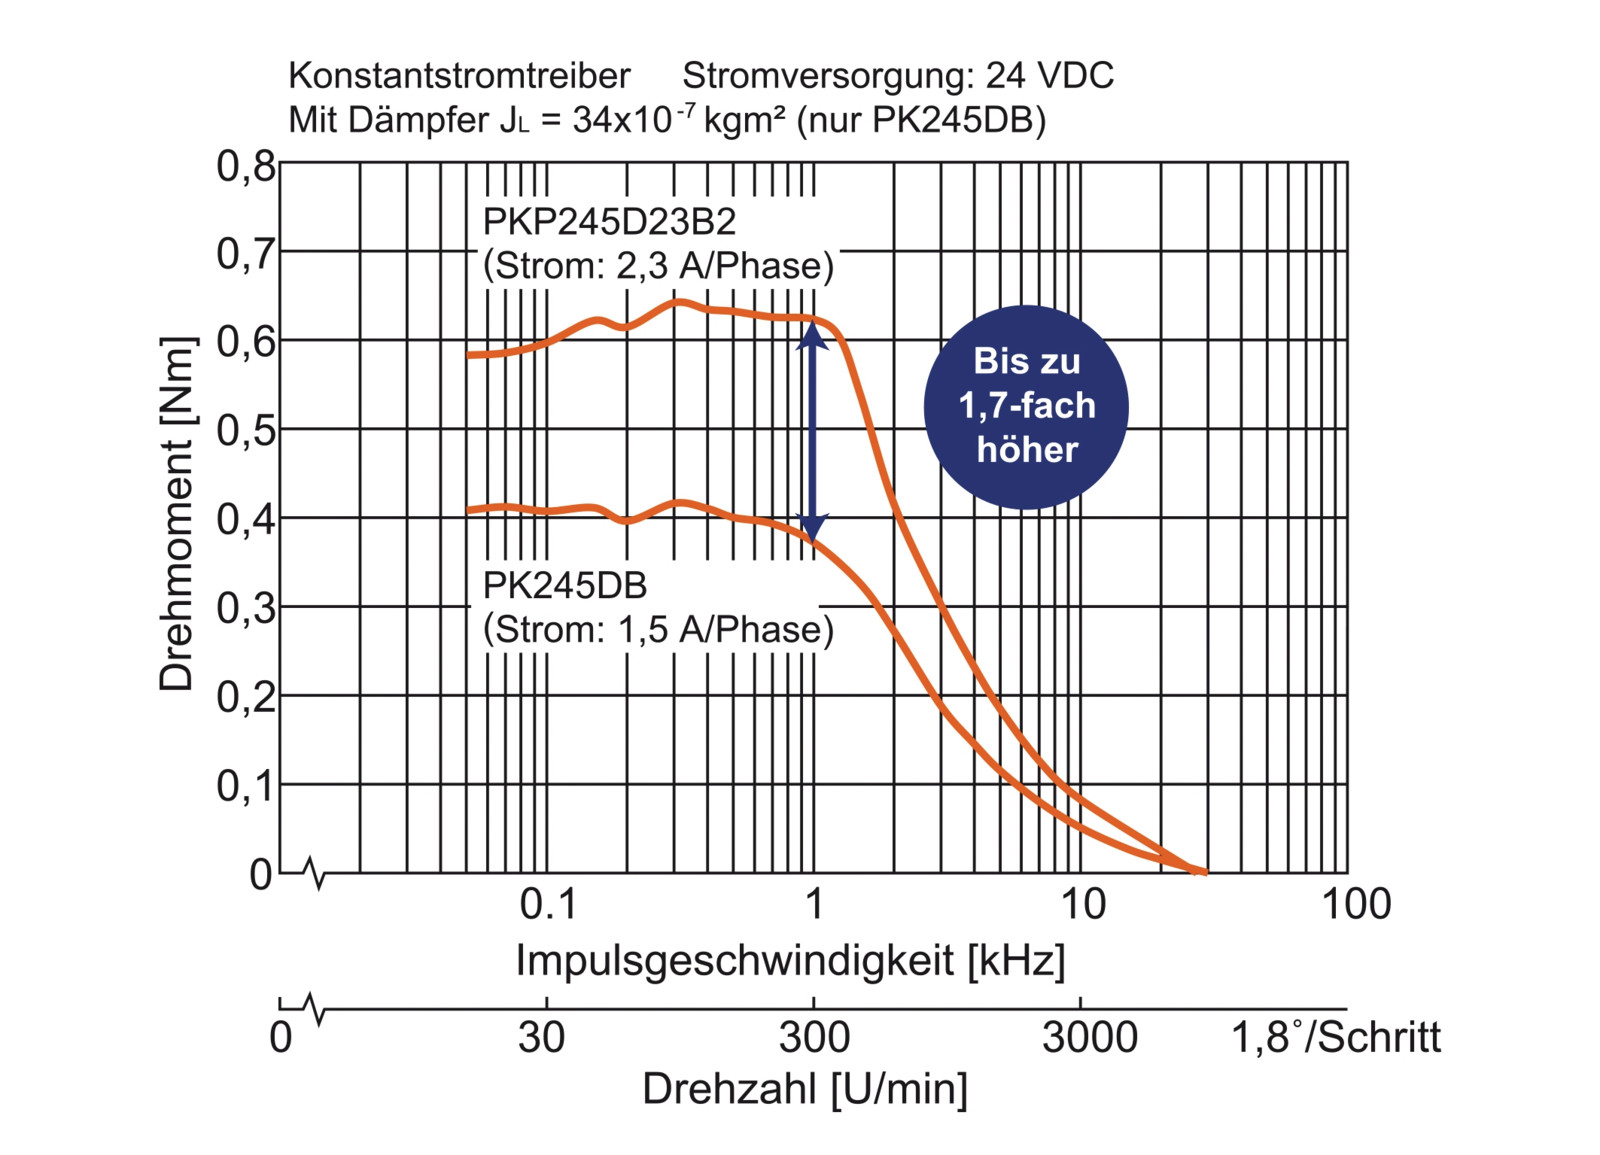 Die High-Torque-Schrittmotoren der PKP-Serie erreichen im Vergleich zu Vorgängermodellen ein höheres Drehmoment im gesamten Drehzahlbereich.